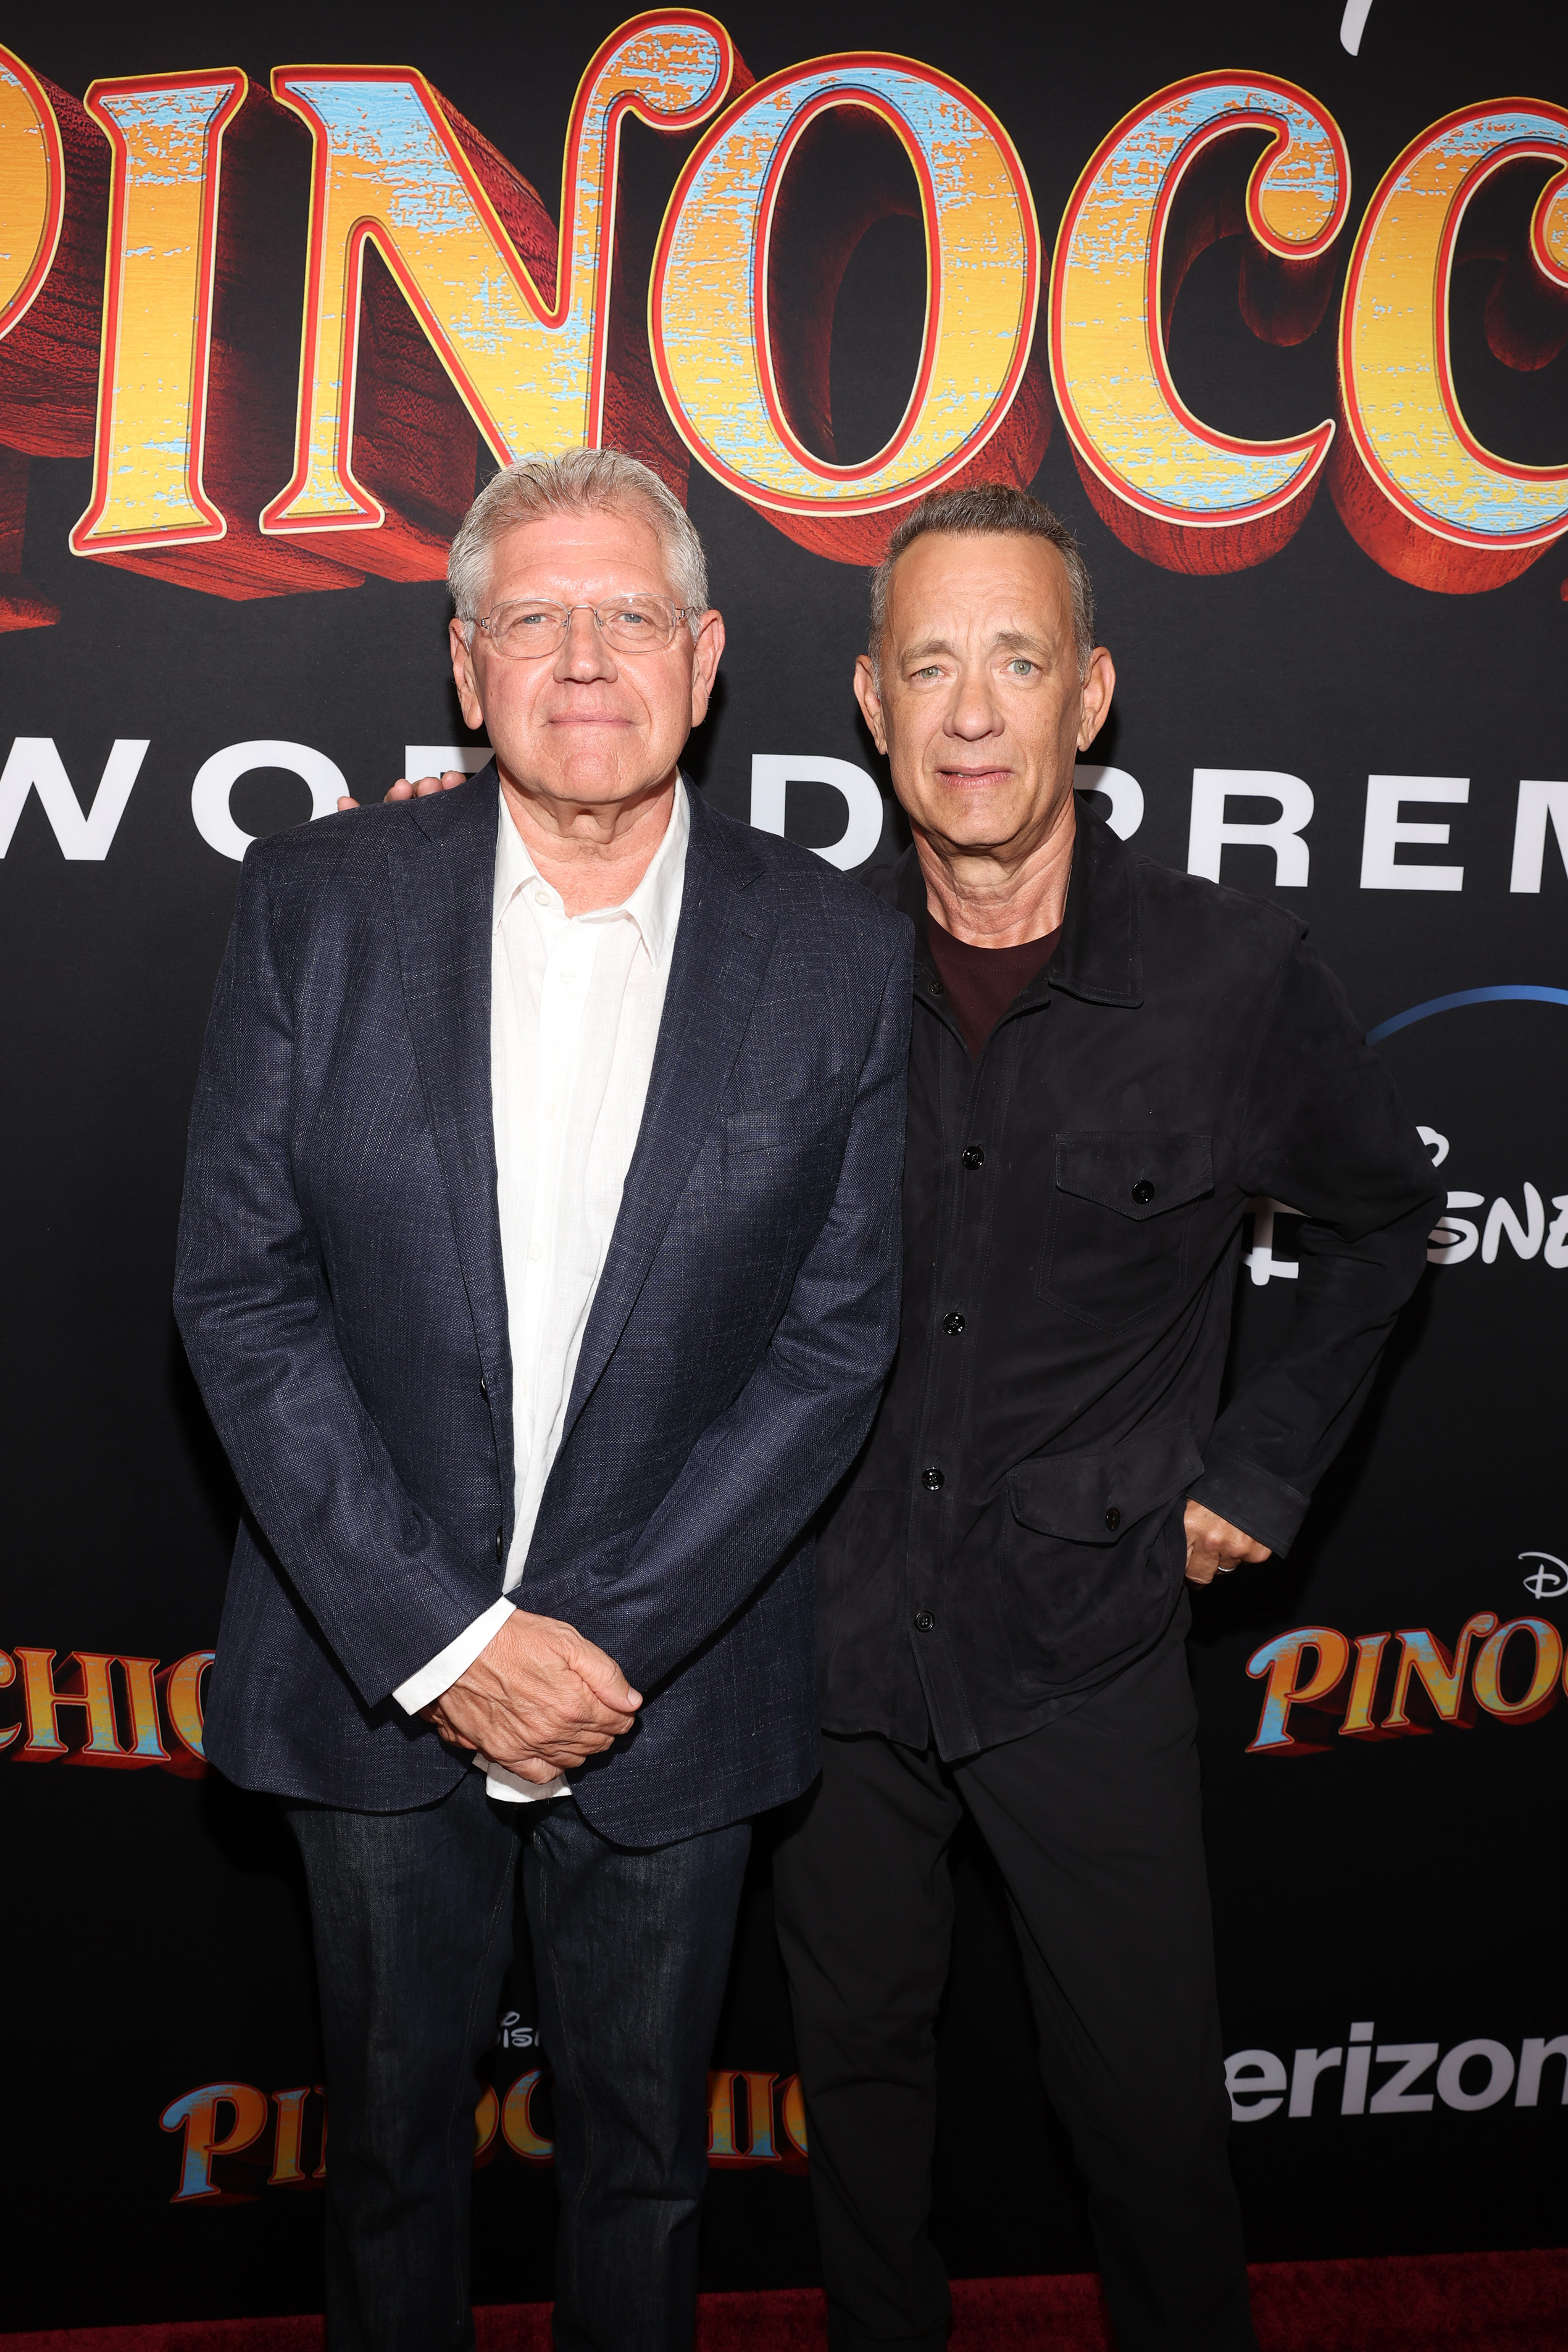 Robert Zemeckis et Tom Hanks lors de la première mondiale de "Pinocchio" à Burbank, en Californie, le 7 septembre 2022. | Source : Getty Images